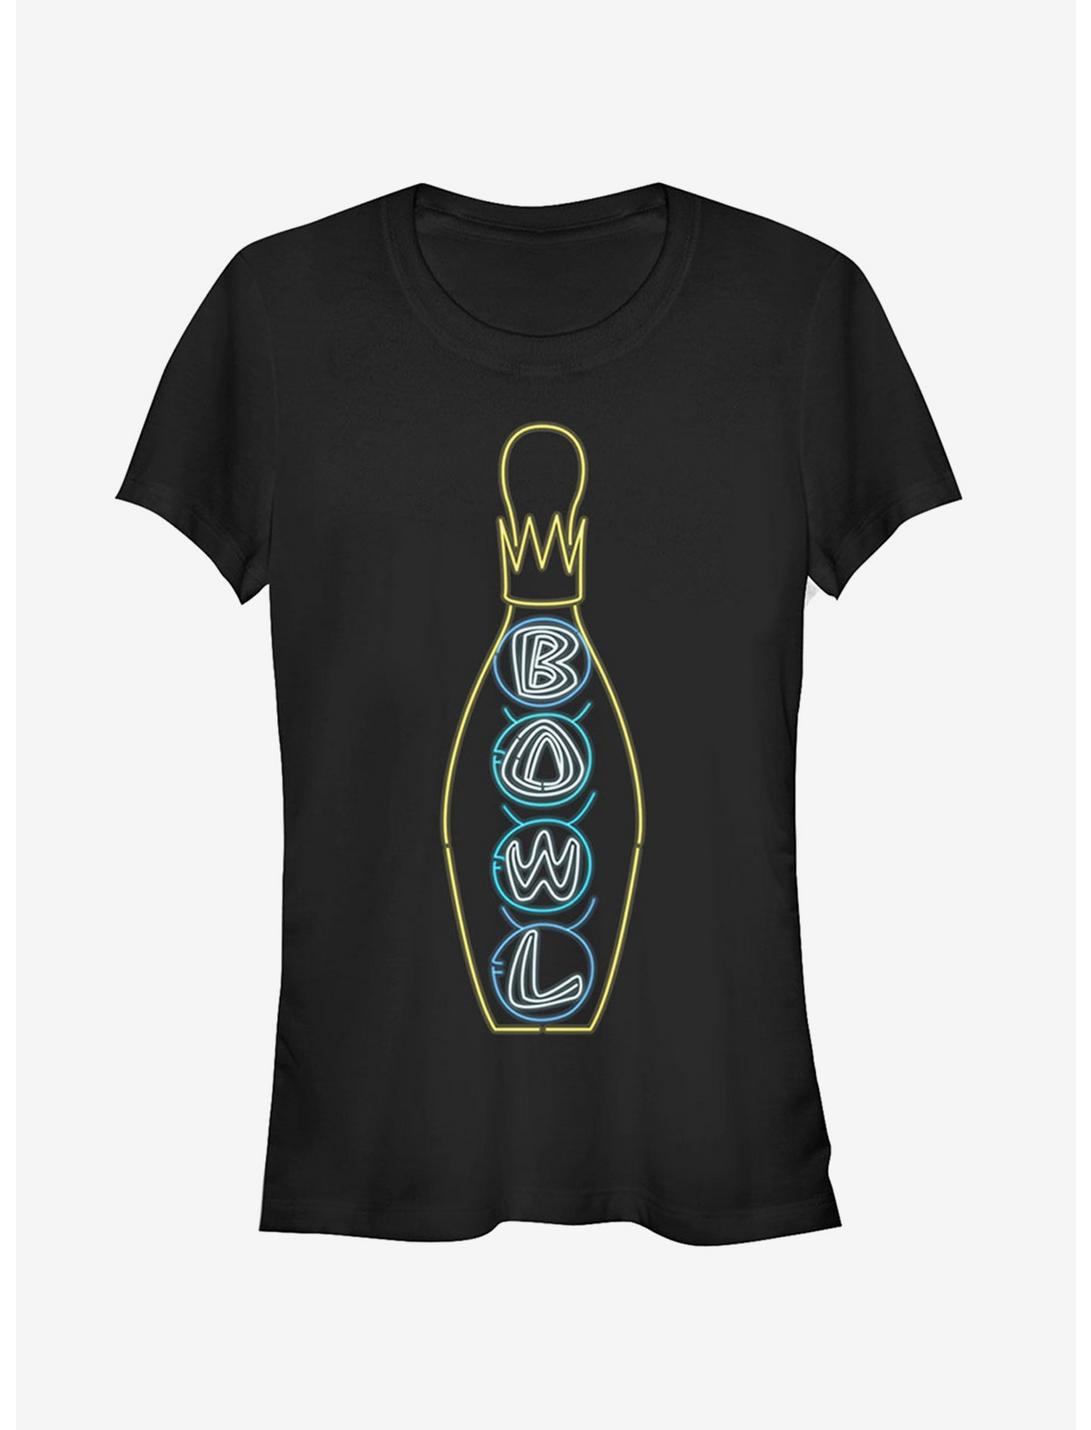 Bowling Neon Light Print Girls T-Shirt, BLACK, hi-res